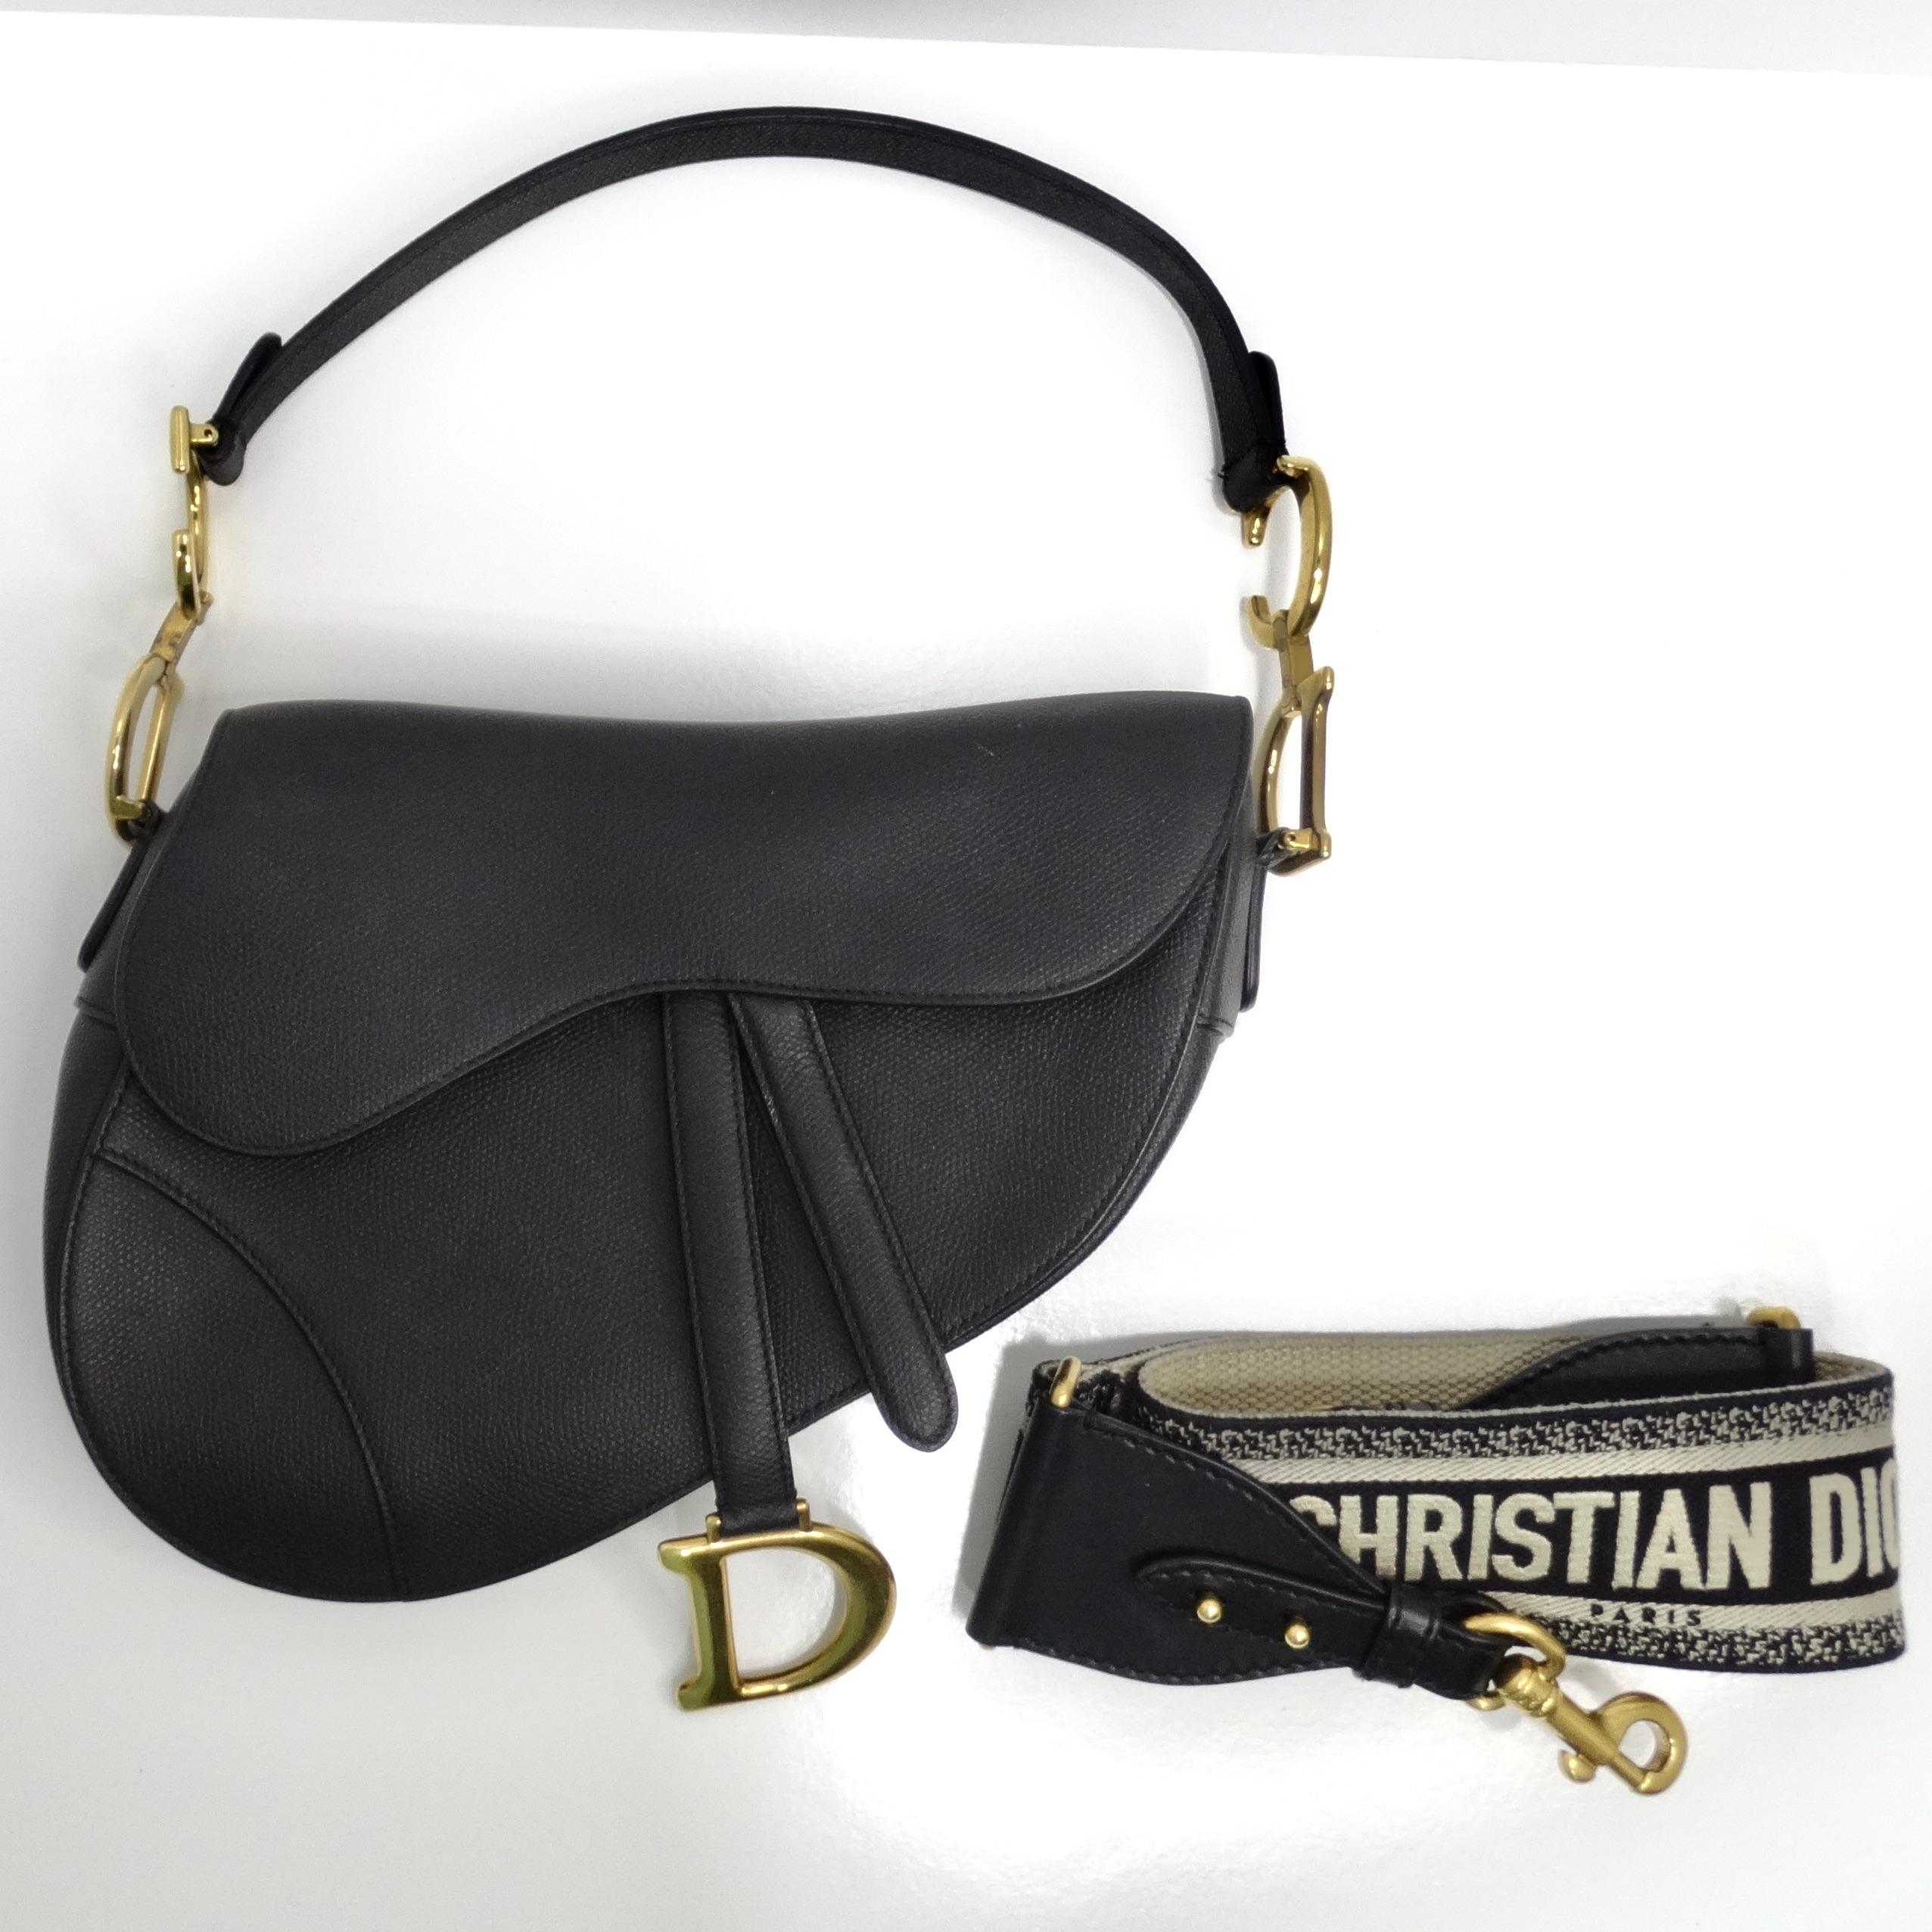 Voici le sac Christian Dior Medium Saddle Bag en cuir de veau noir, une icône intemporelle de la mode de luxe. Confectionné en cuir de veau grainé dans la forme emblématique de la selle, ce sac respire la sophistication et l'élégance.

Le sac est